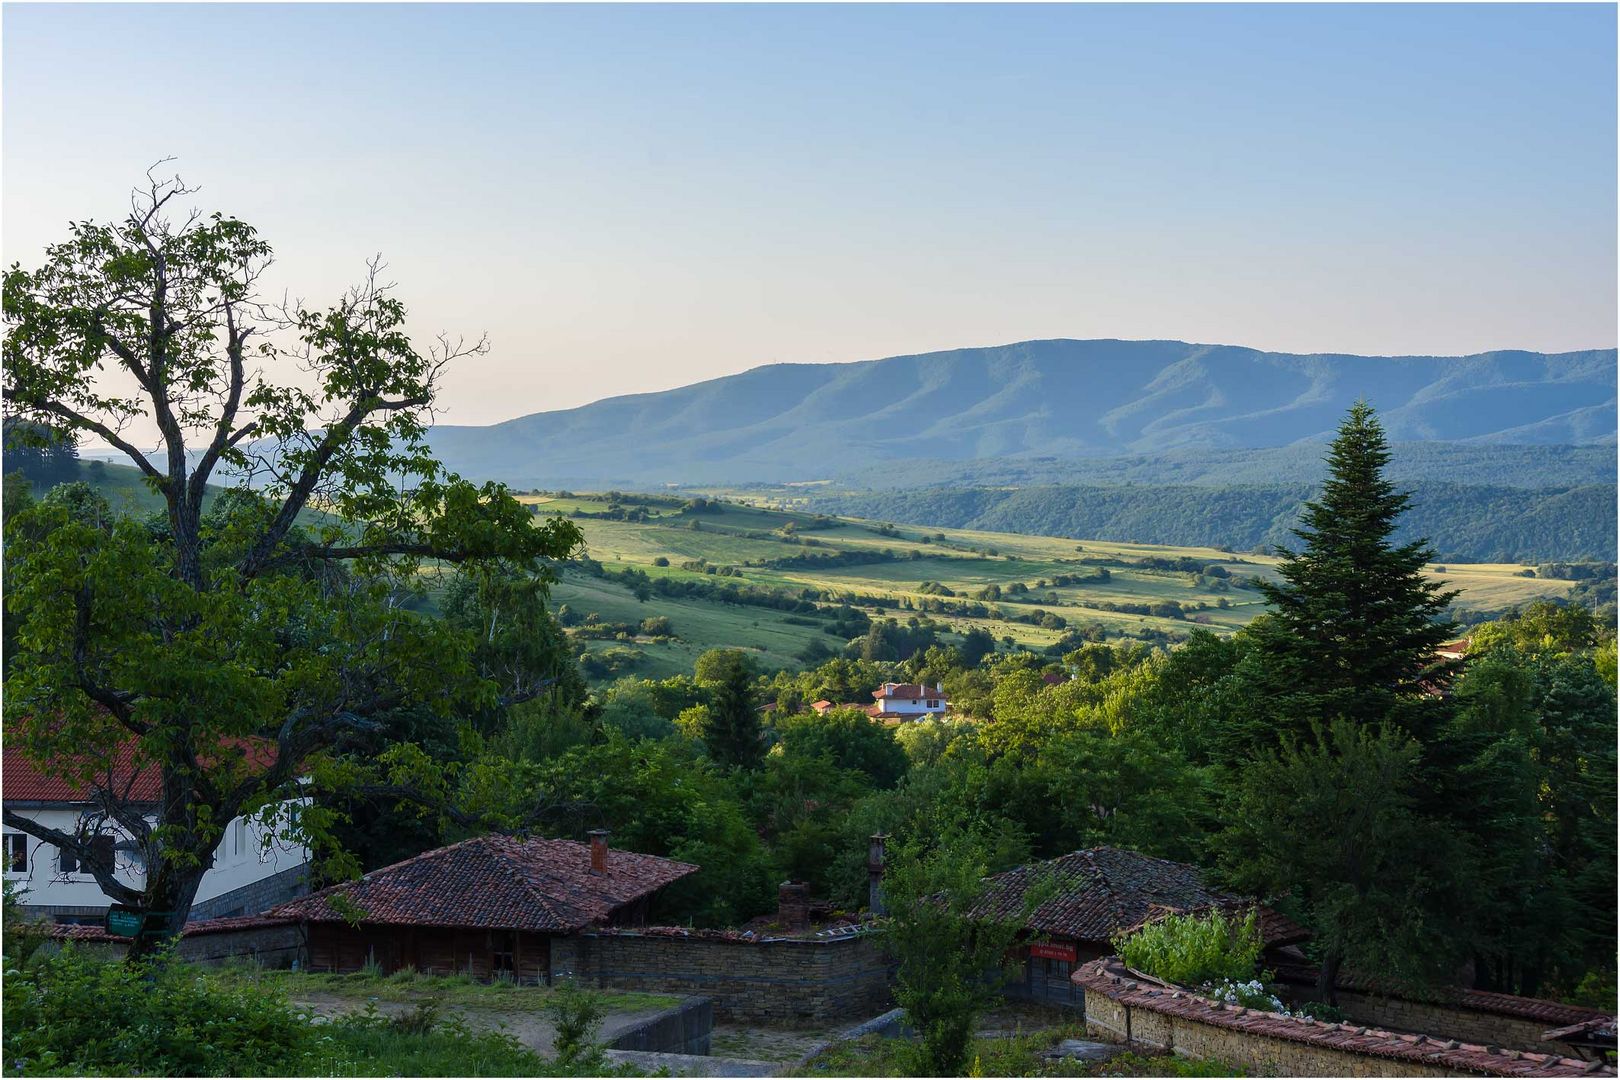 Sherawna ein Dorf im Balkangebirge